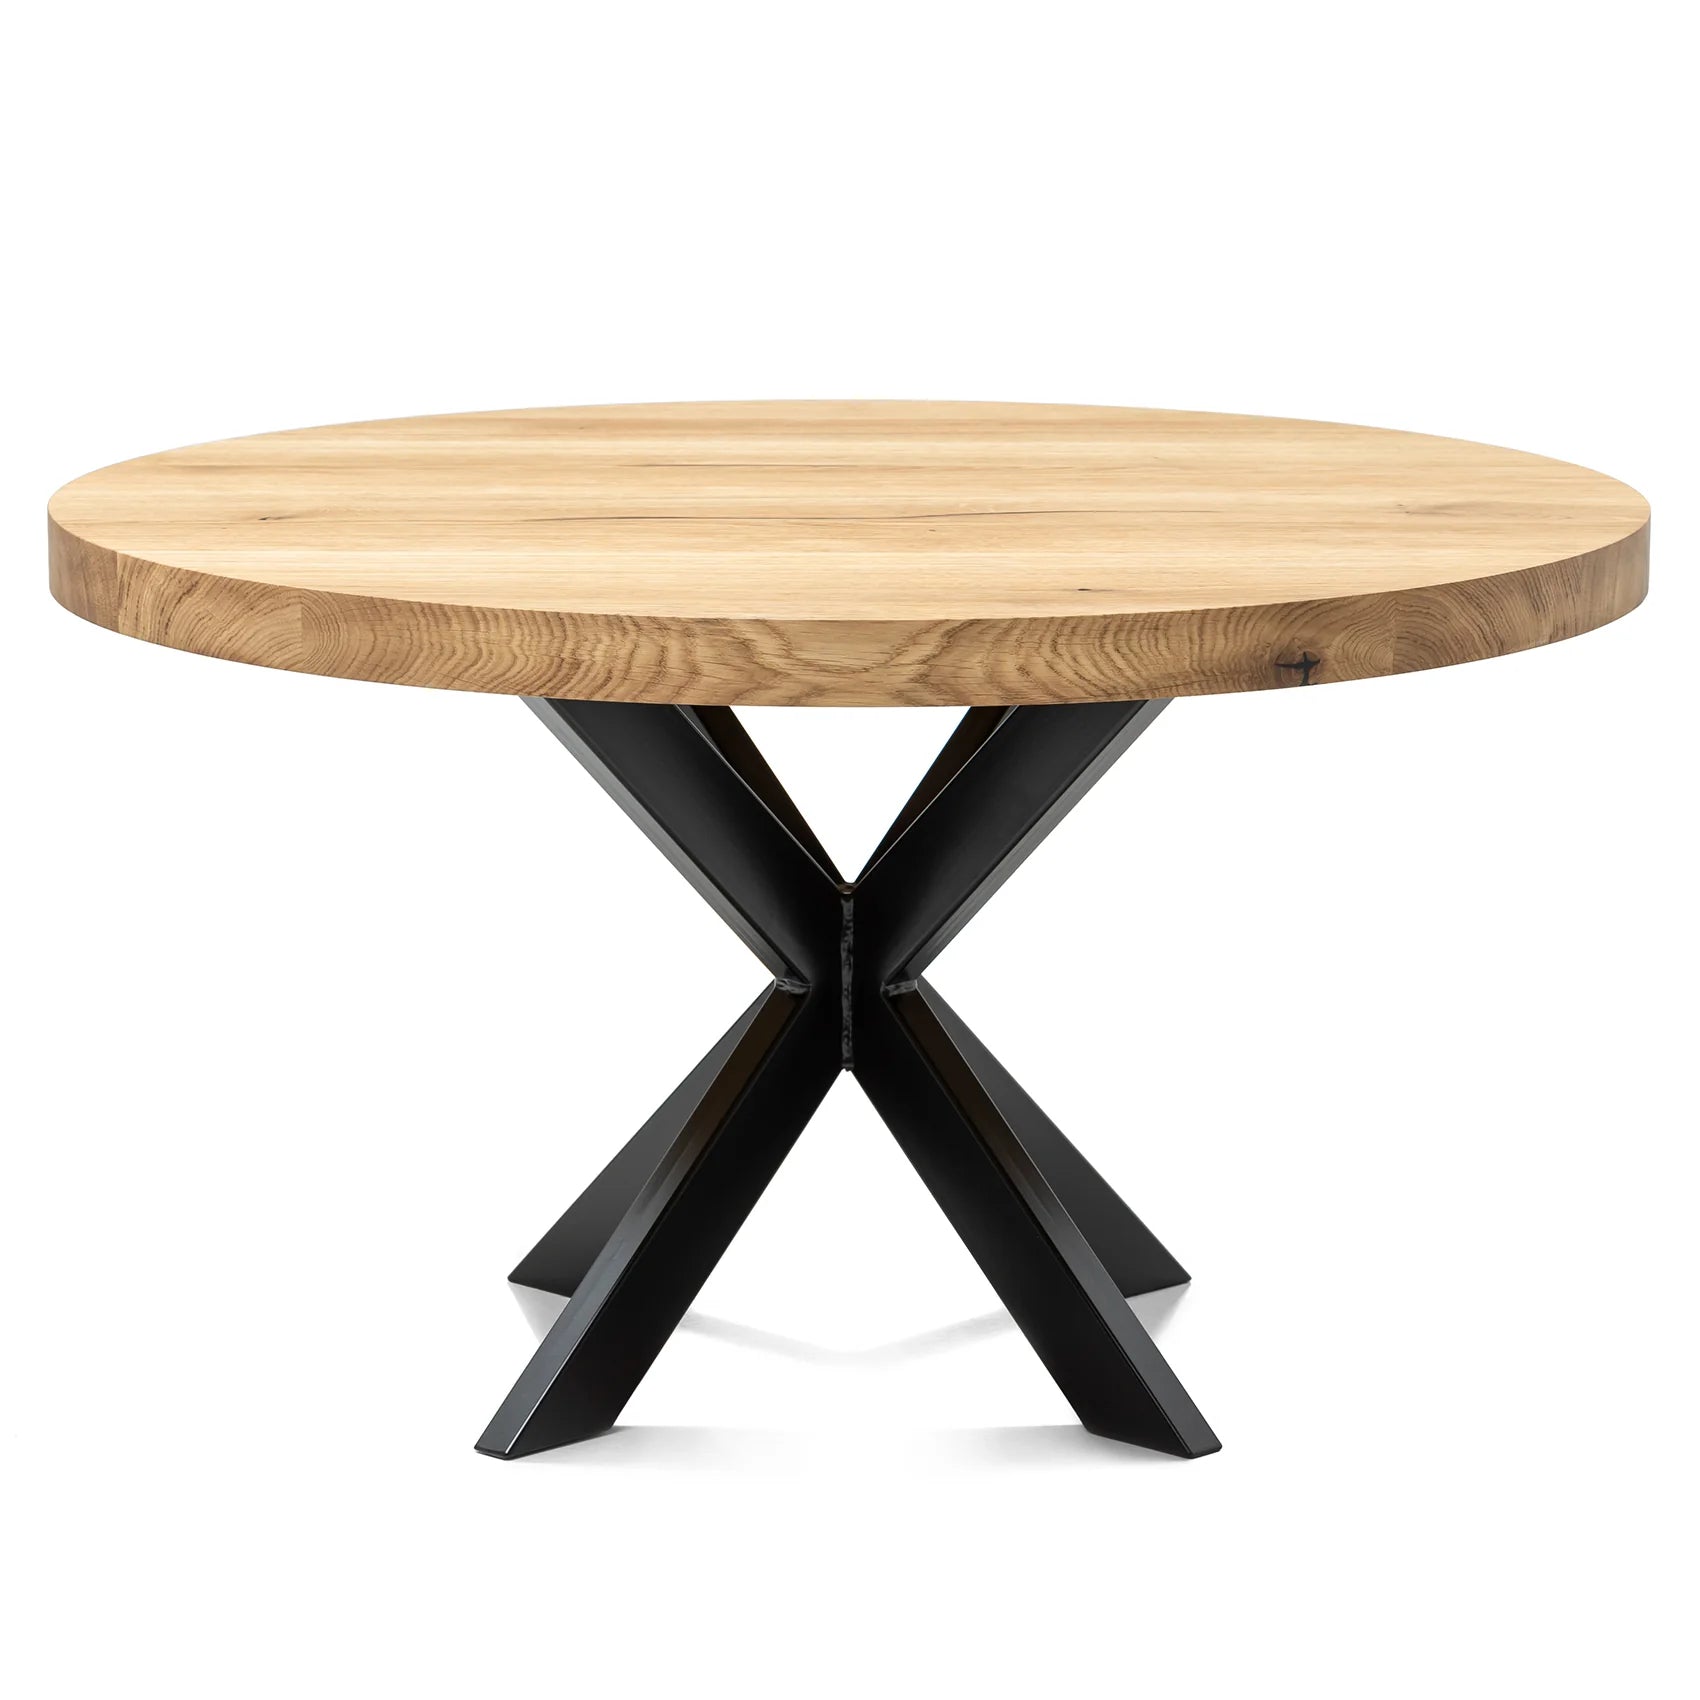 Rubriek Aannemer tijger Round Oak Coffee Table, Natural - Solid Oak Table With Metal Legs